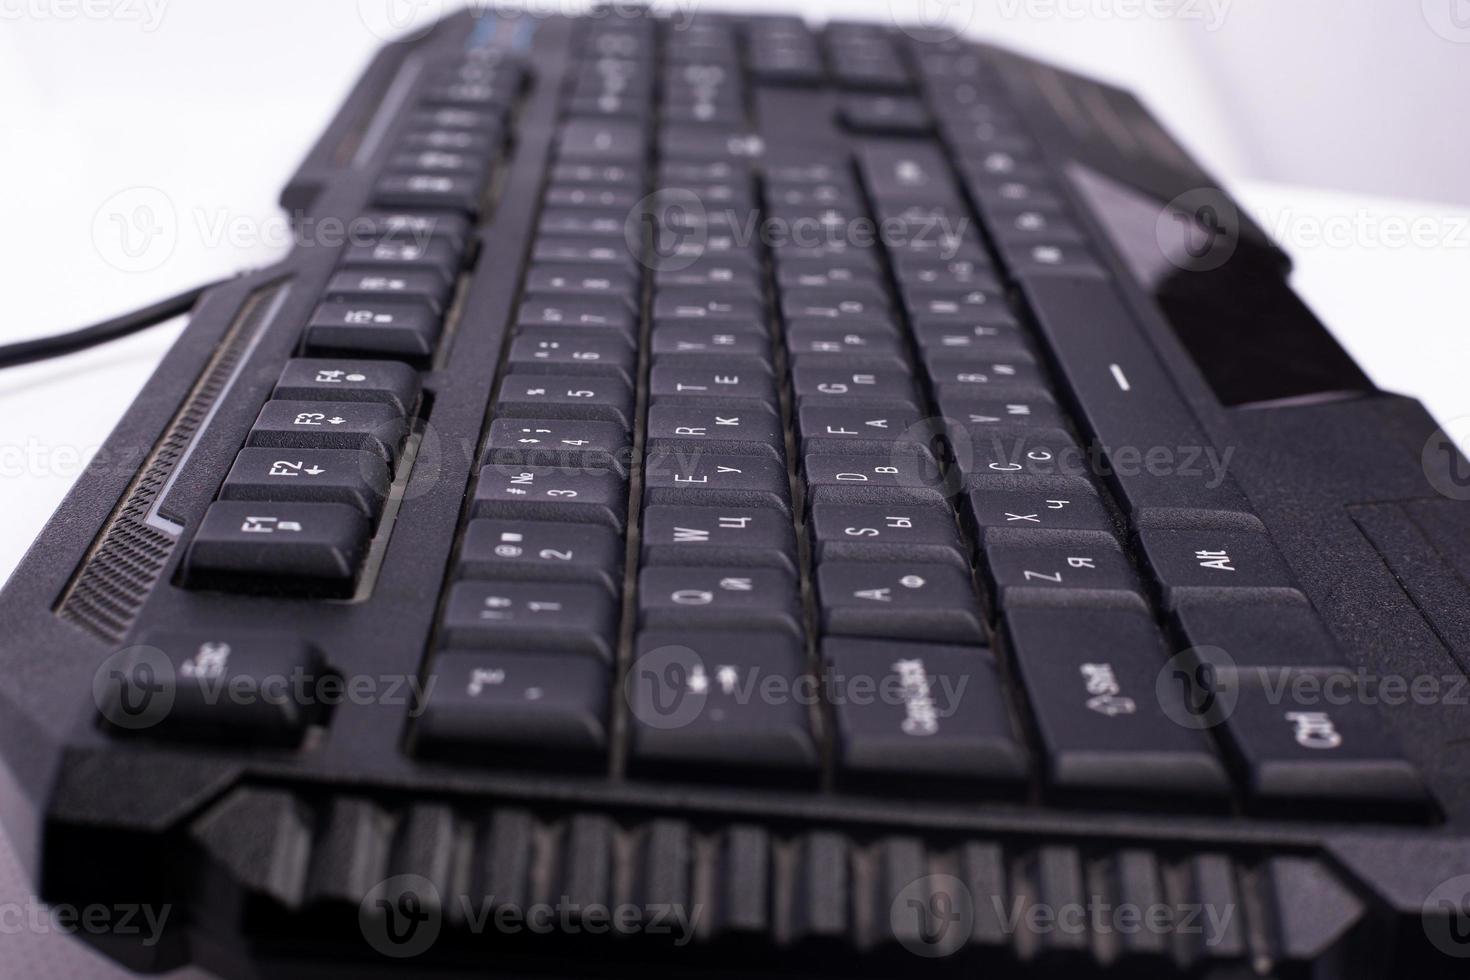 zwart computertoetsenbord. apparaat voor berichten op een computer foto